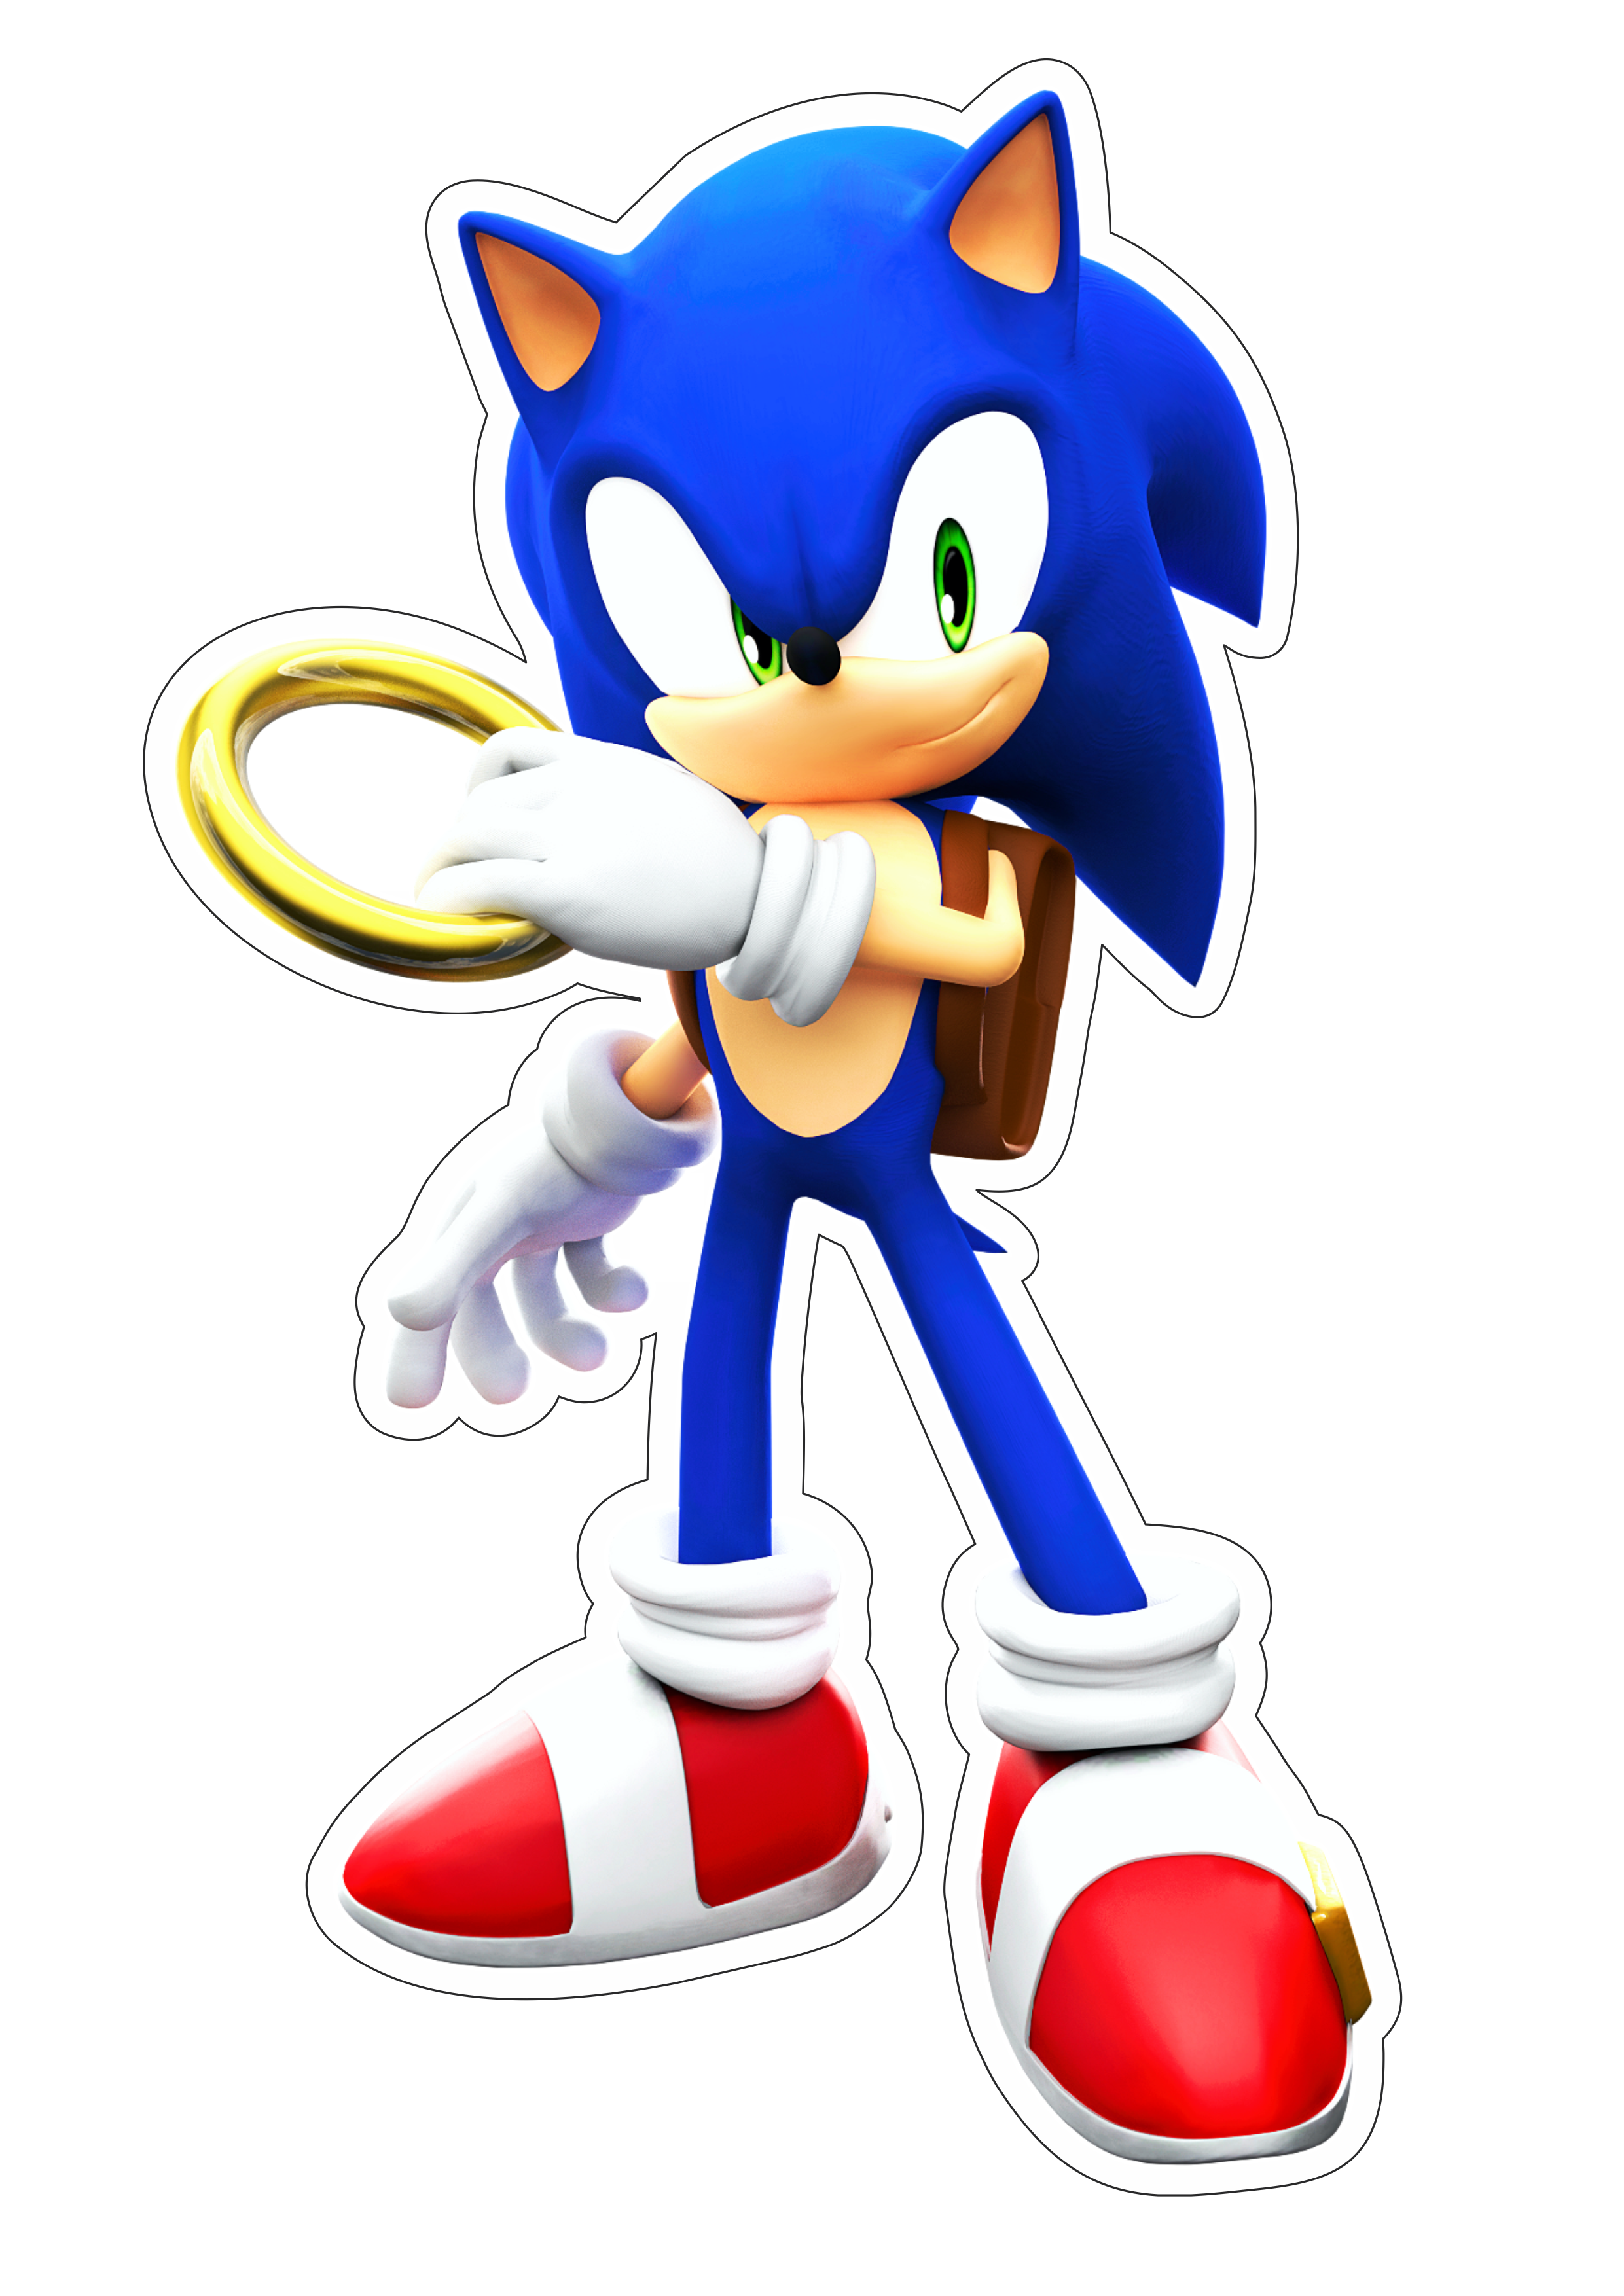 Sonic the hedgehog personagem de game infantil sega imagem sem fundo com contorno png